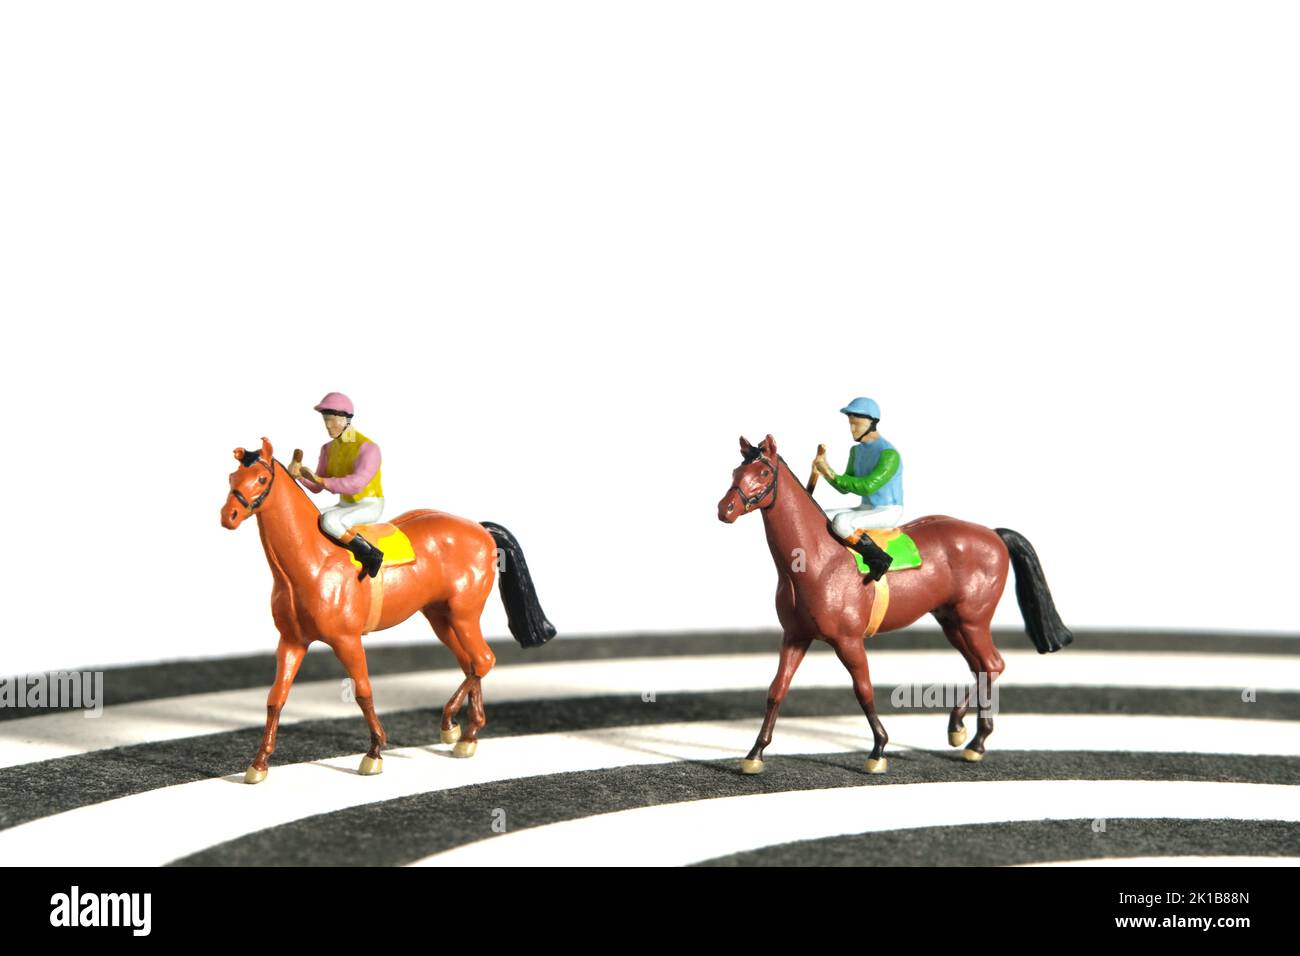 Miniatur Menschen Spielzeug Figur Fotografie. Jockey Männer reiten auf einer Rennstrecke von Dartboard. Isoliert auf weißem Hintergrund. Bildfoto Stockfoto